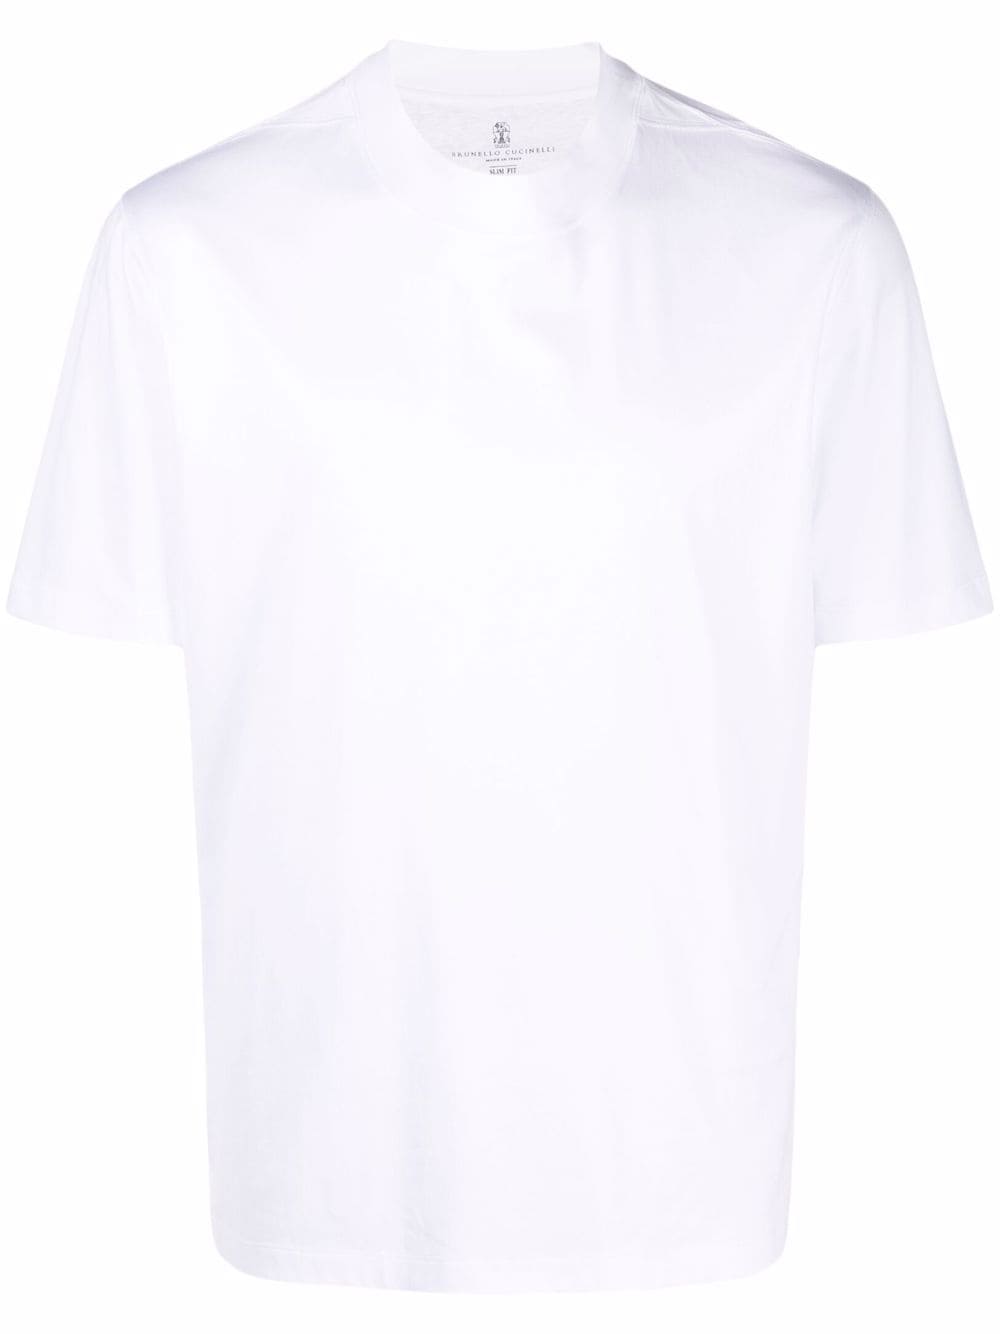 фото Brunello cucinelli футболка с короткими рукавами